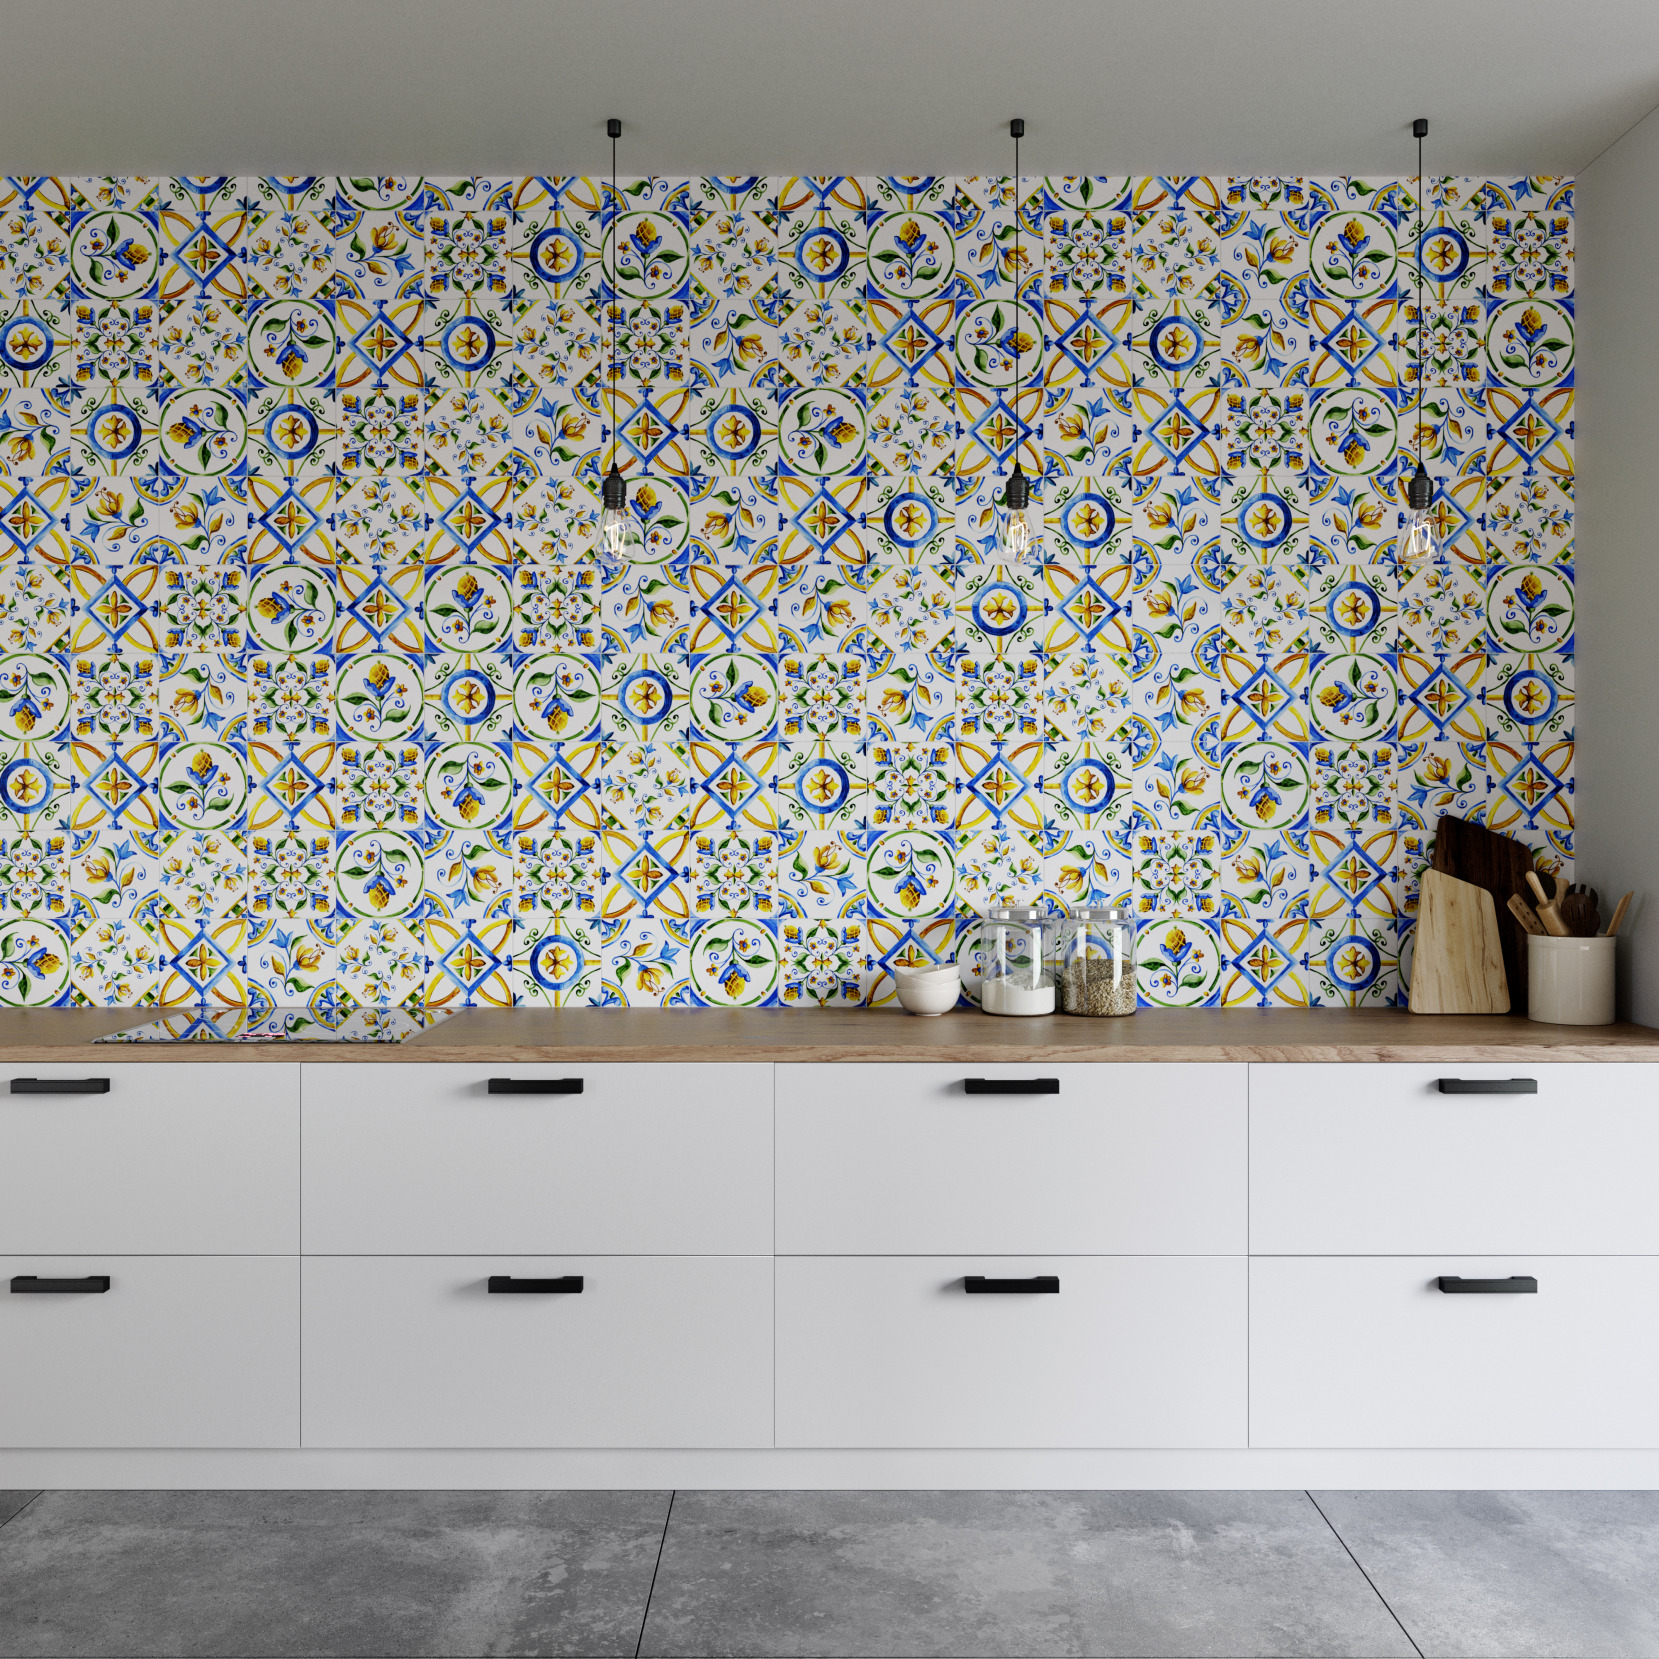 Modern kitchen interior with ceramic mosaic backsplash